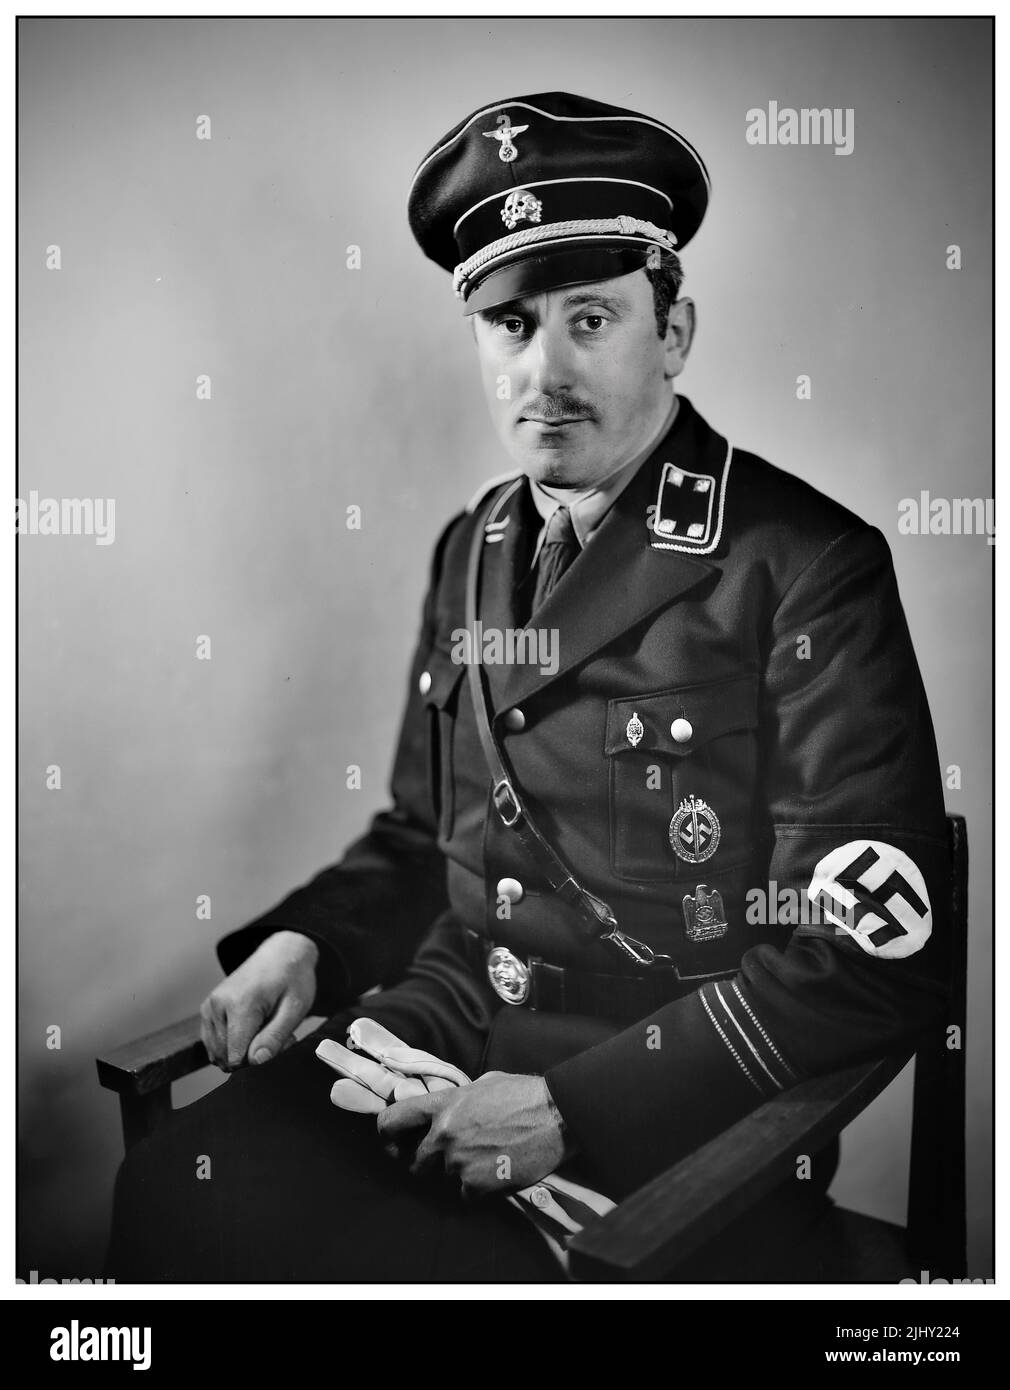 Emil Maurice (19 de enero de 1897 – 6 de febrero de 1972) fue un miembro temprano del Partido Nacional Socialista de los Trabajadores Alemanes (Partido Nazi) y miembro fundador de la Schutzstaffel (SS). Fue el primer chofer personal de Hitler, y fue una de las pocas personas de ascendencia mixta judía y étnica alemana en servir en las SS, siendo declarado ario honorario por Adolf Hitler en 1935. Foto de stock